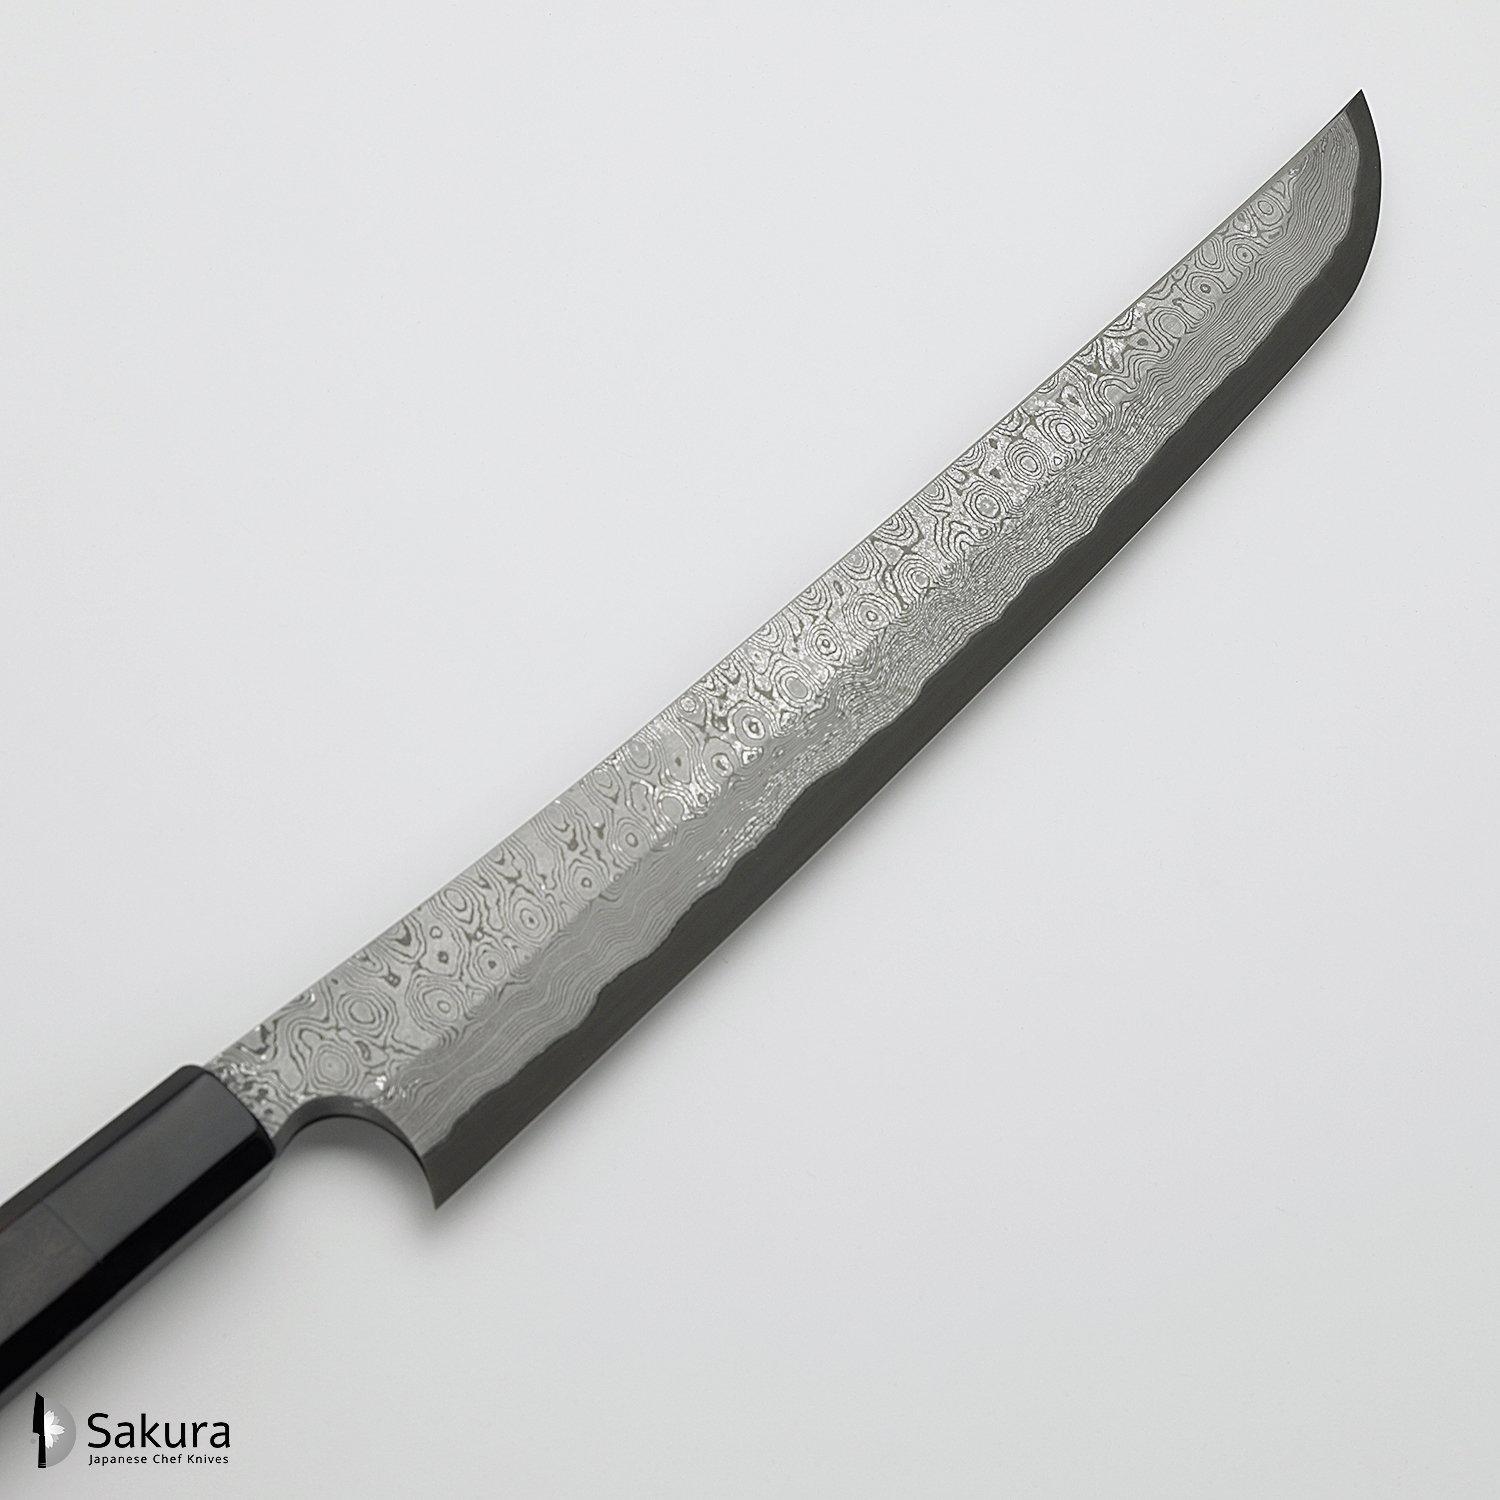 סכין חיתוך דגים סושי/סשימי סָקִימָארוּ יָאנָאגִיבָּה 300מ״מ מחושלת בעבודת יד: פלדת פחמן יפנית Aogami#2 גימור דמשק שחורה Kurosome בנויה 50 שכבות ניקל כסף ונחושת ניגארה יפן – SKNIGAB2KZNDYYS30016